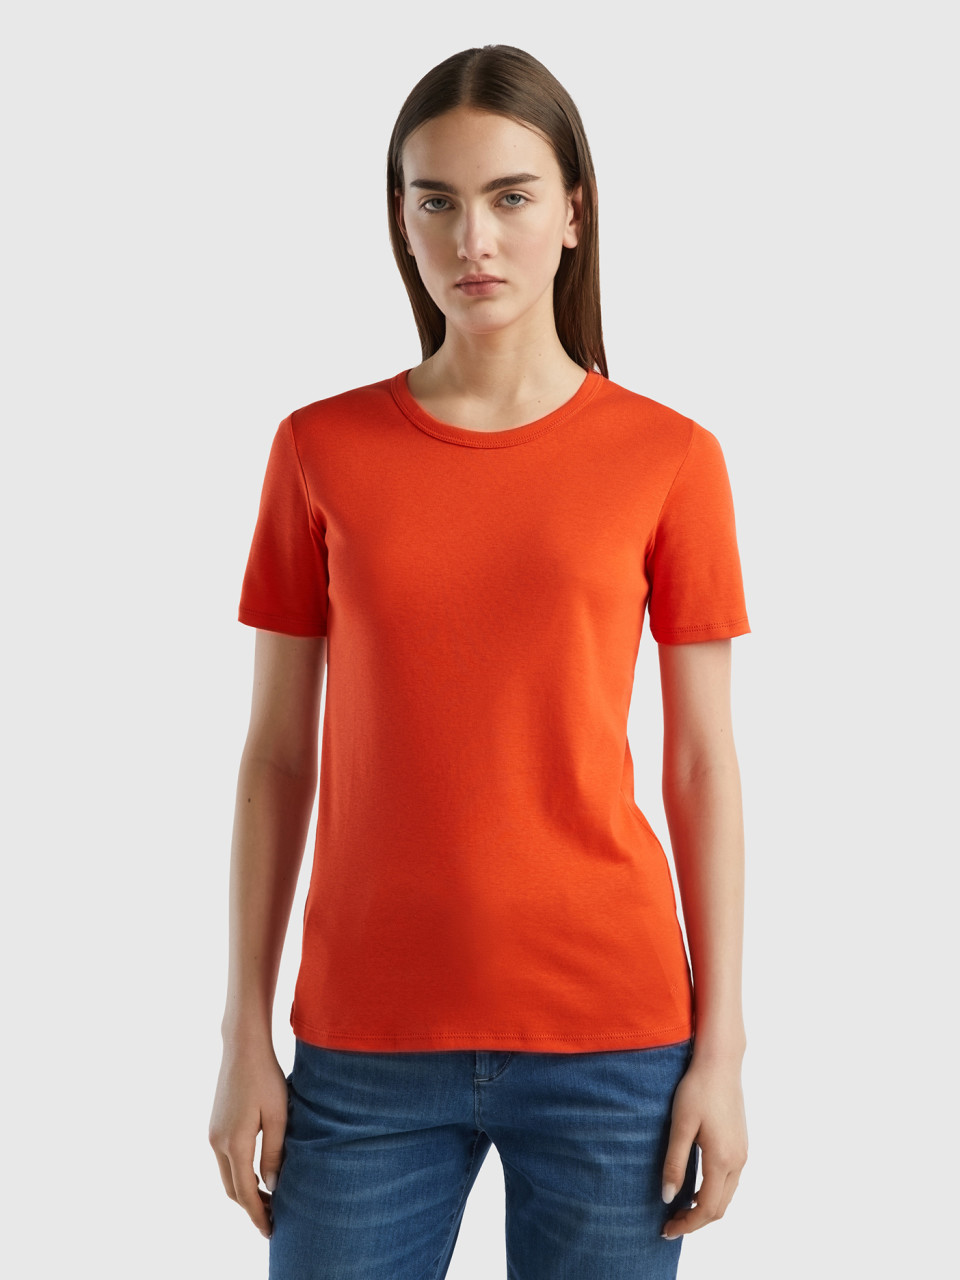 Benetton, Long Fiber Cotton T-shirt, Red, Women